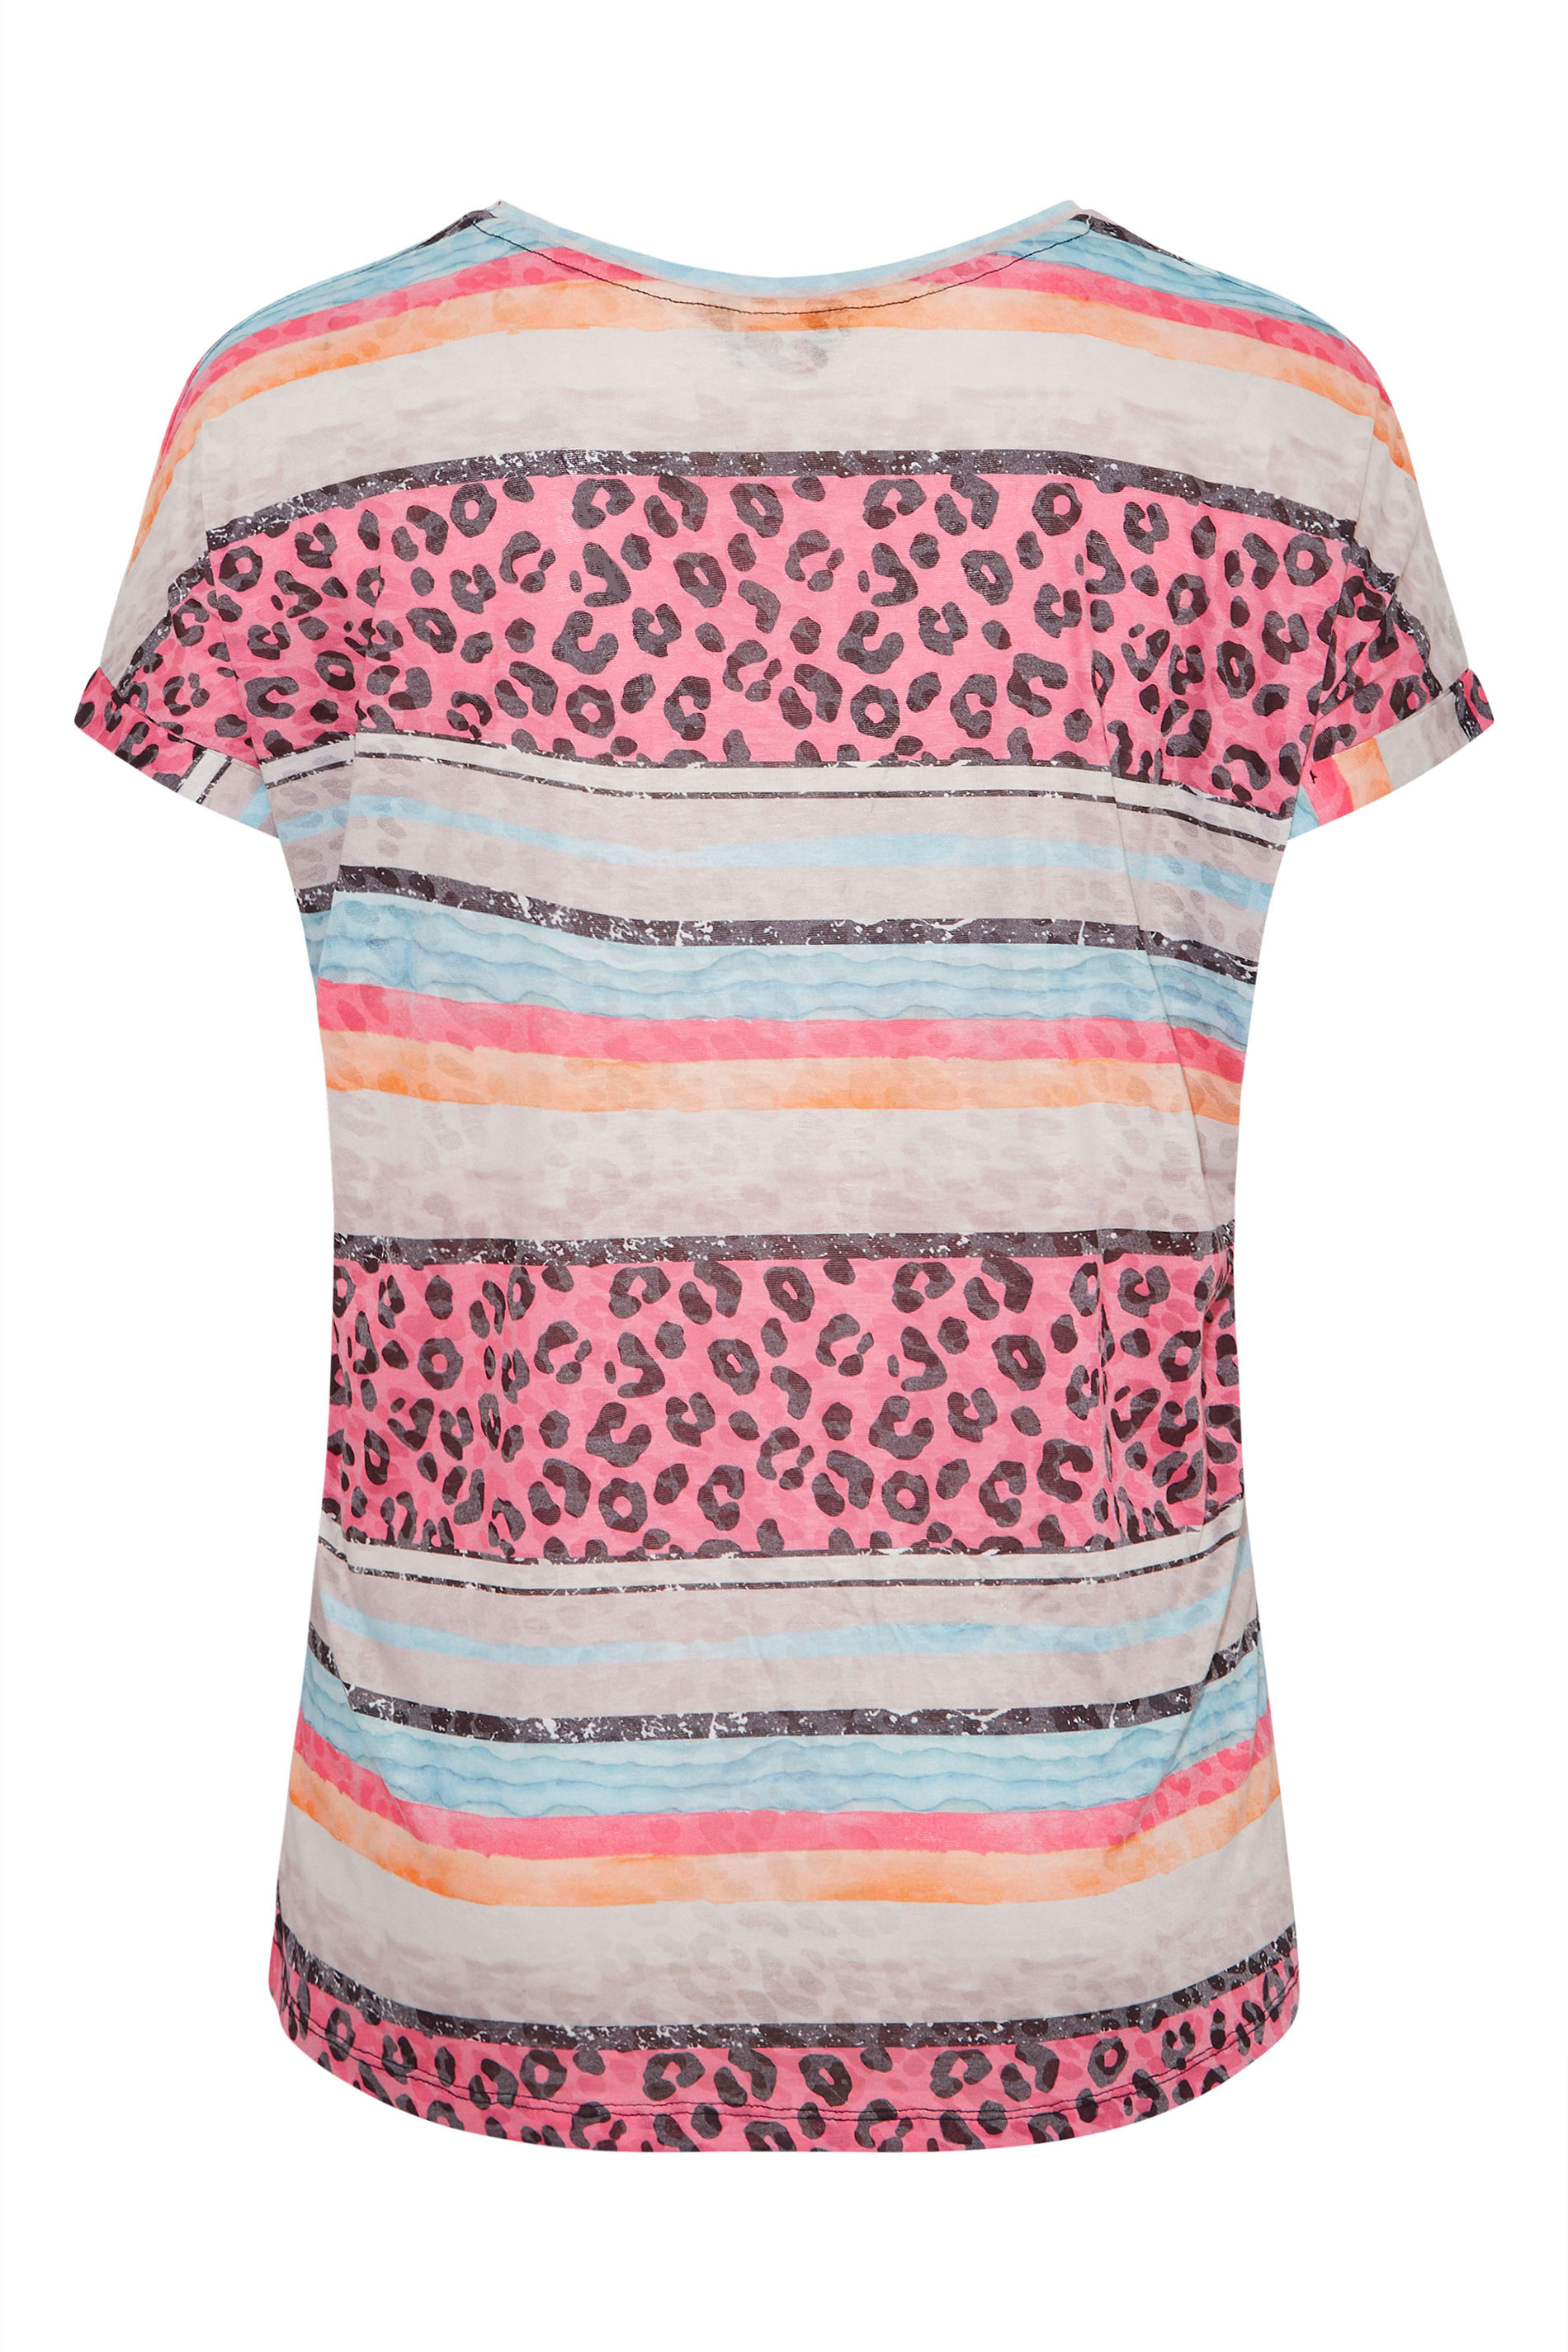 Plus Size Pink Leopard Print Colour Block T-Shirt | Yours Clothing